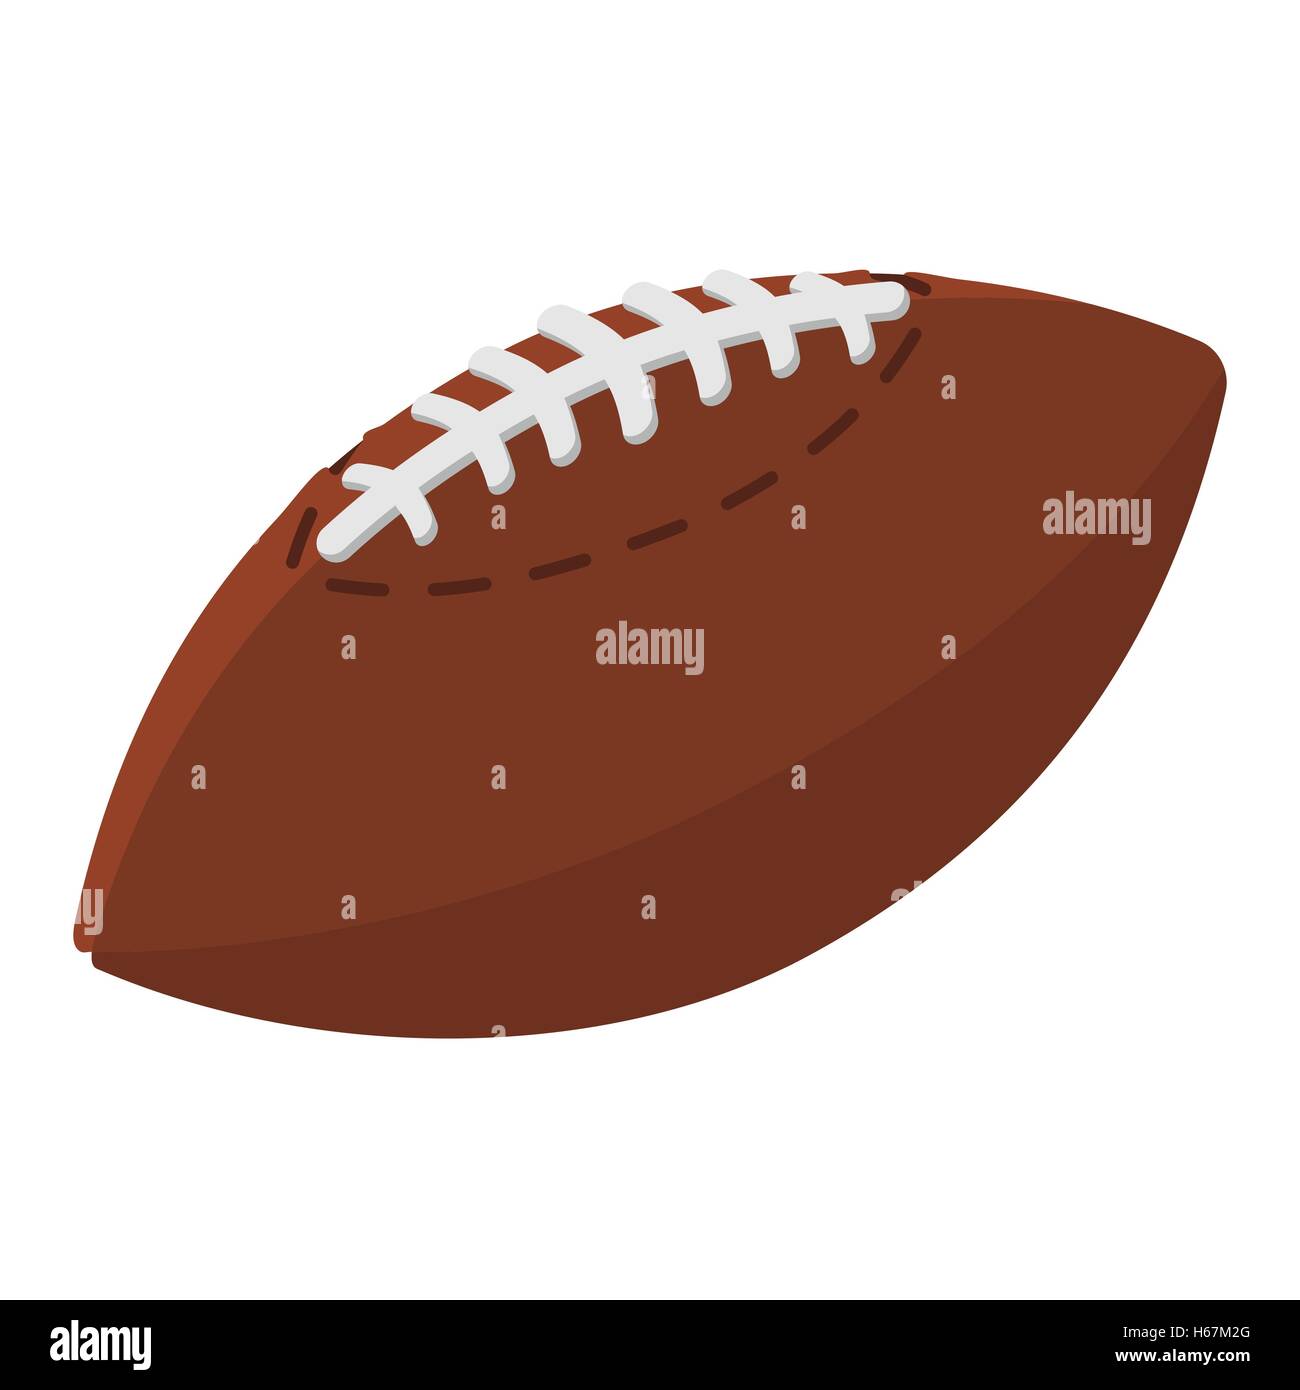 American football ball cartoon illustration Stock Vector